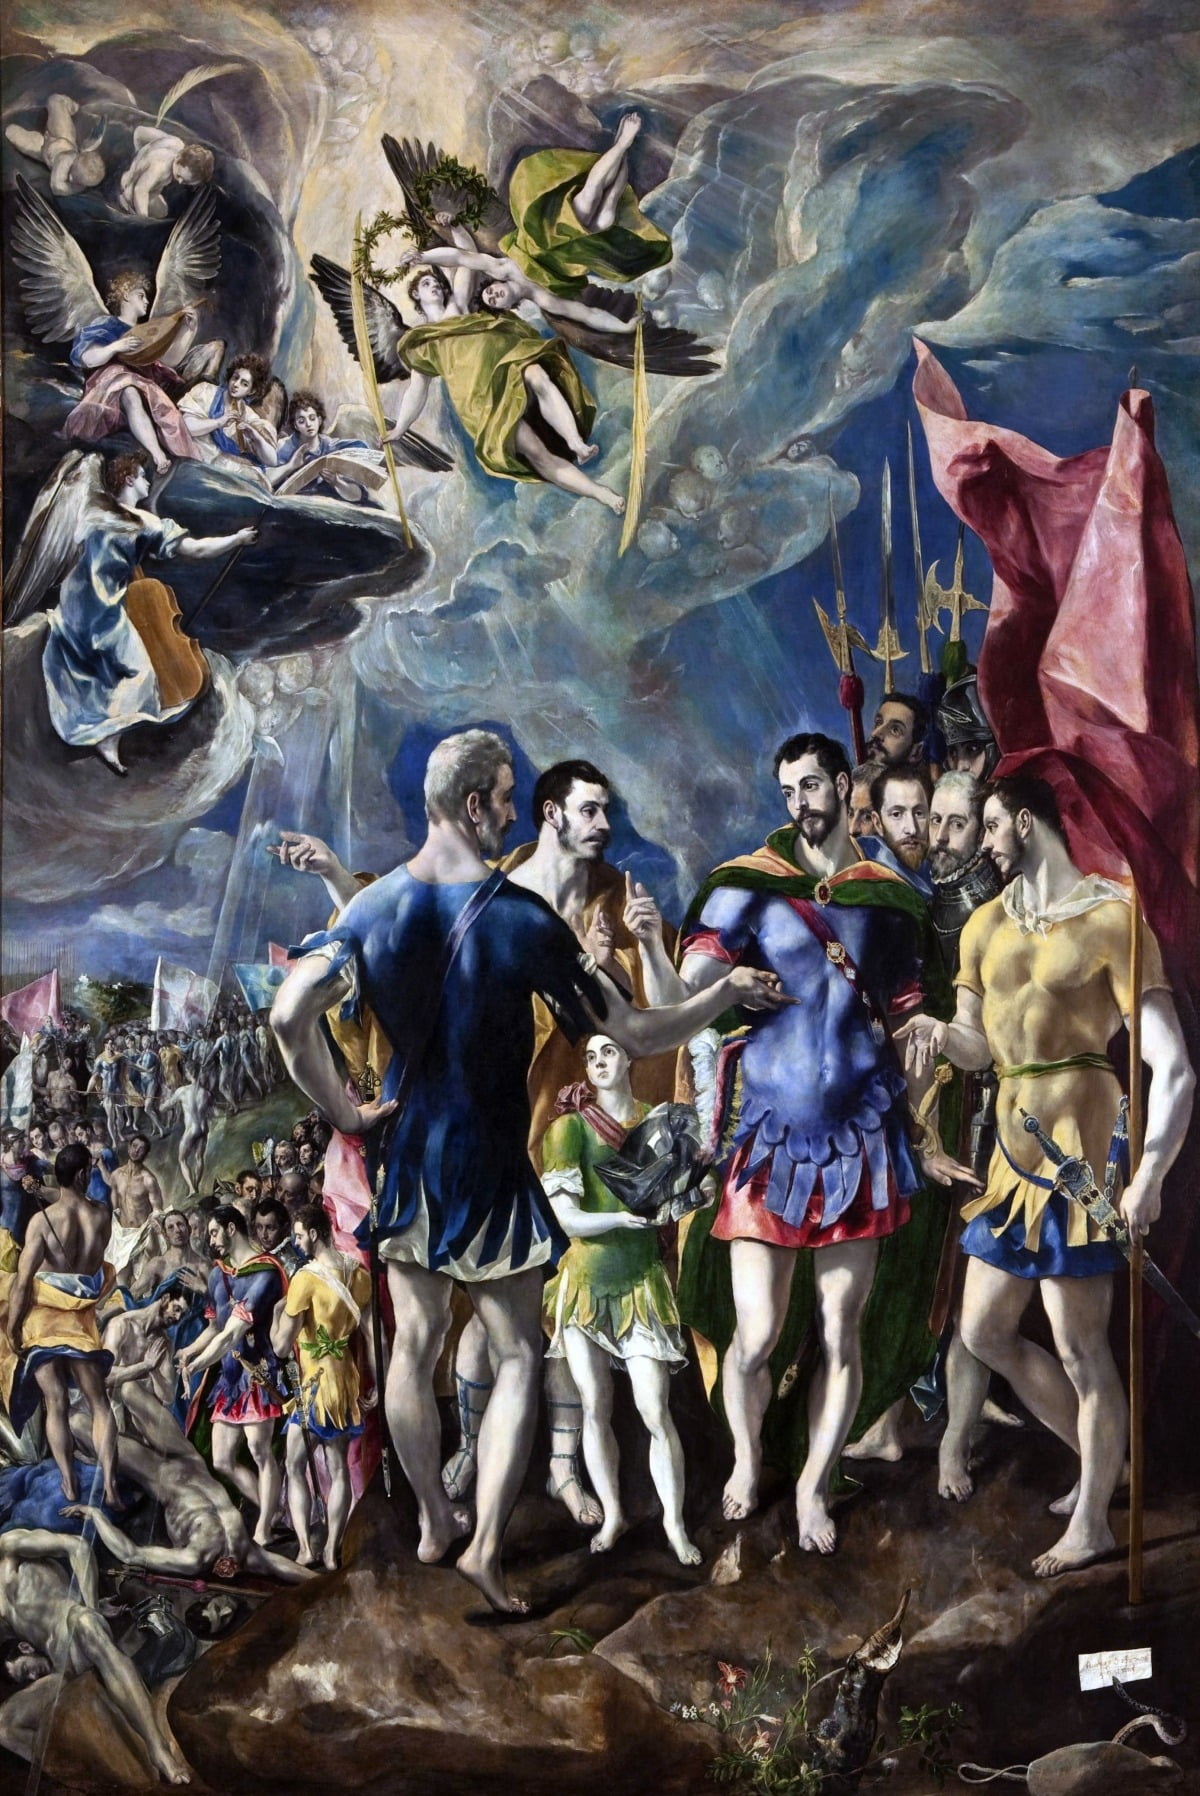 성 마우리티우스의 순교(1580~1582). 성 마우리티우스는 3세기경 이집트 출신의 로마 군인으로, 287년에 순교한 기독교의 성인이다. 그는 전쟁의 승리를 기념하는 연회에서 로마 신에게 제사를 지내는 걸 거부했다는 이유로 자신을 따르는 군인들과 죽음을 맞는다. 이 주제를 다루는 다른 화가들의 작품 대부분은 참혹한 순교 장면을 강조한다. 하지만 엘 그레코는 자신의 작품에서 "제사를 지내지 말고 순교하자"고 설득하는 성 마우리티우스의 의지를 강조했고, 순교 장면은 왼쪽 아래에 작게 배치했다. /엘 에스코리알 산 로렌소 수도원